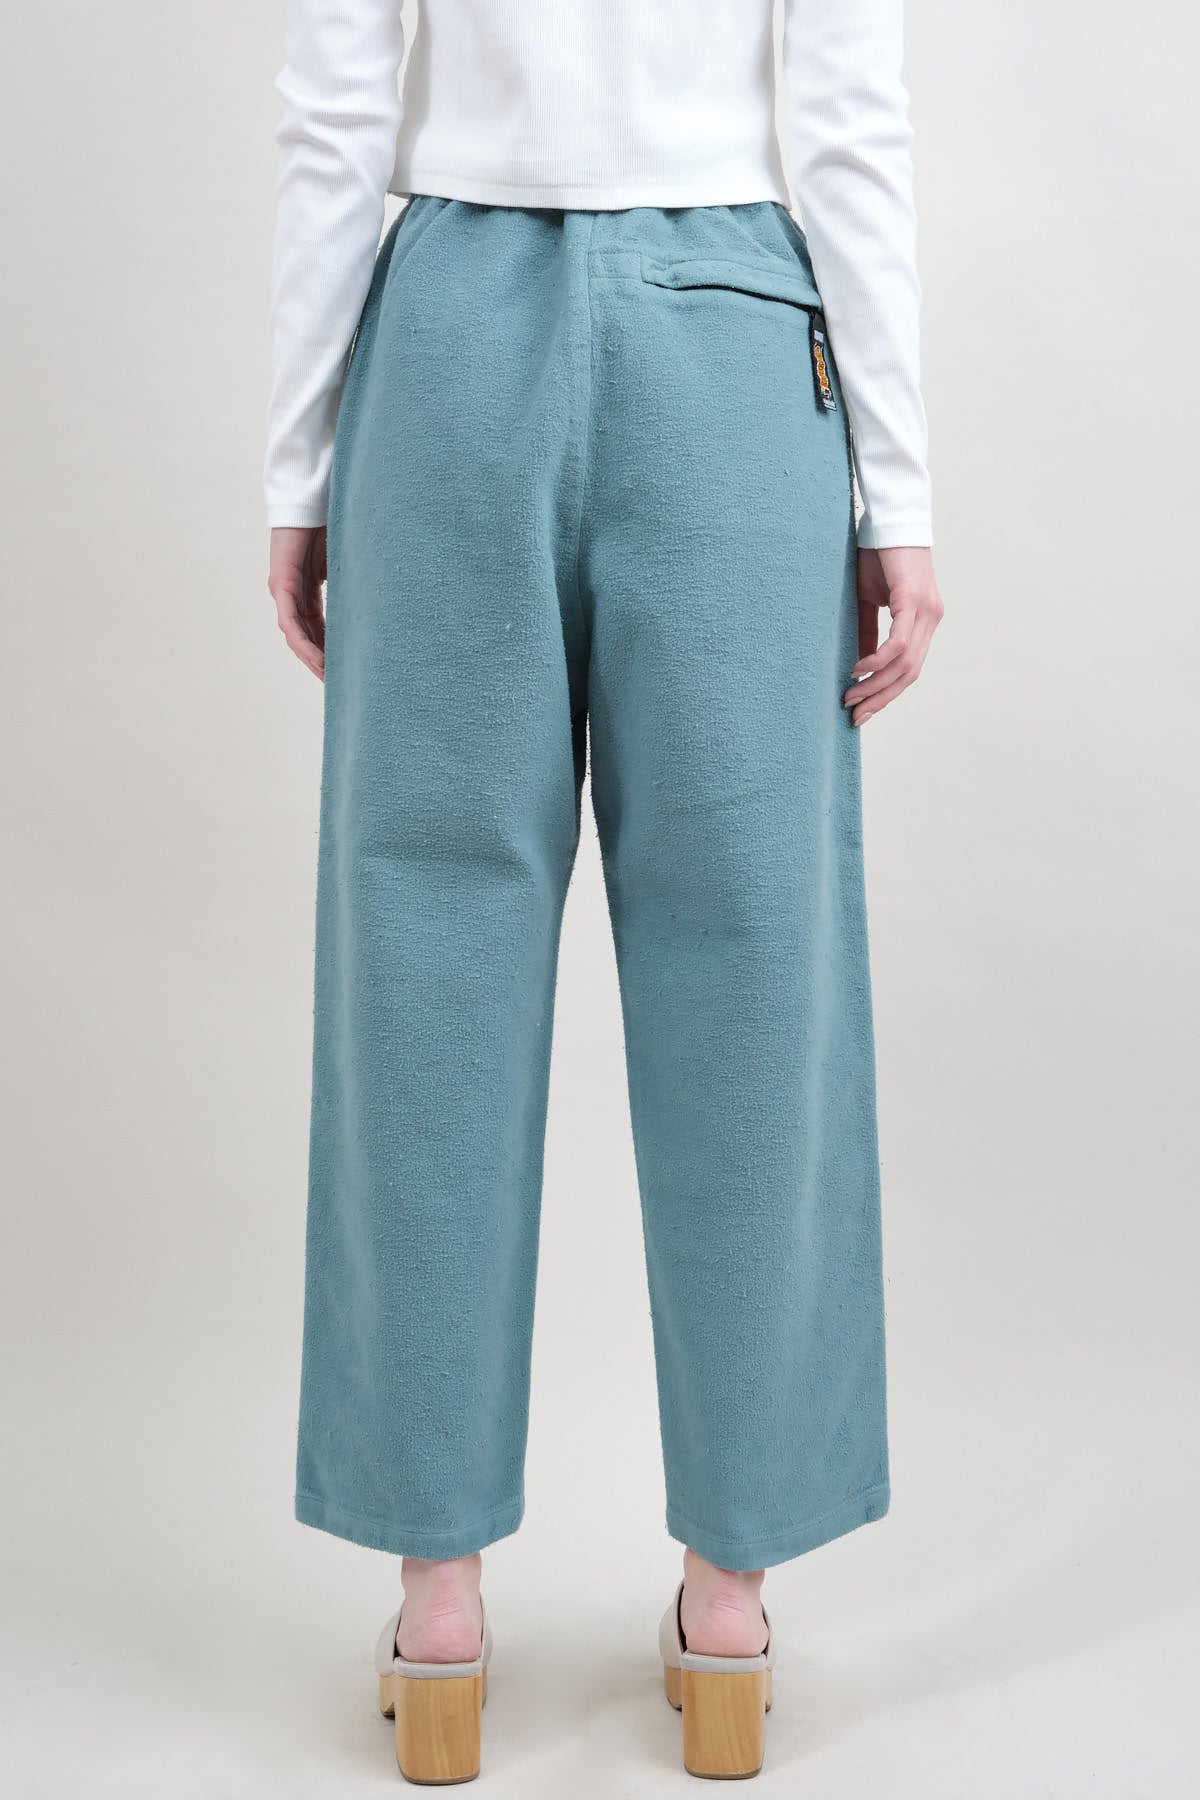 Straight Leg Kapital Corduroy Cotton Easy Pant in Turquoise